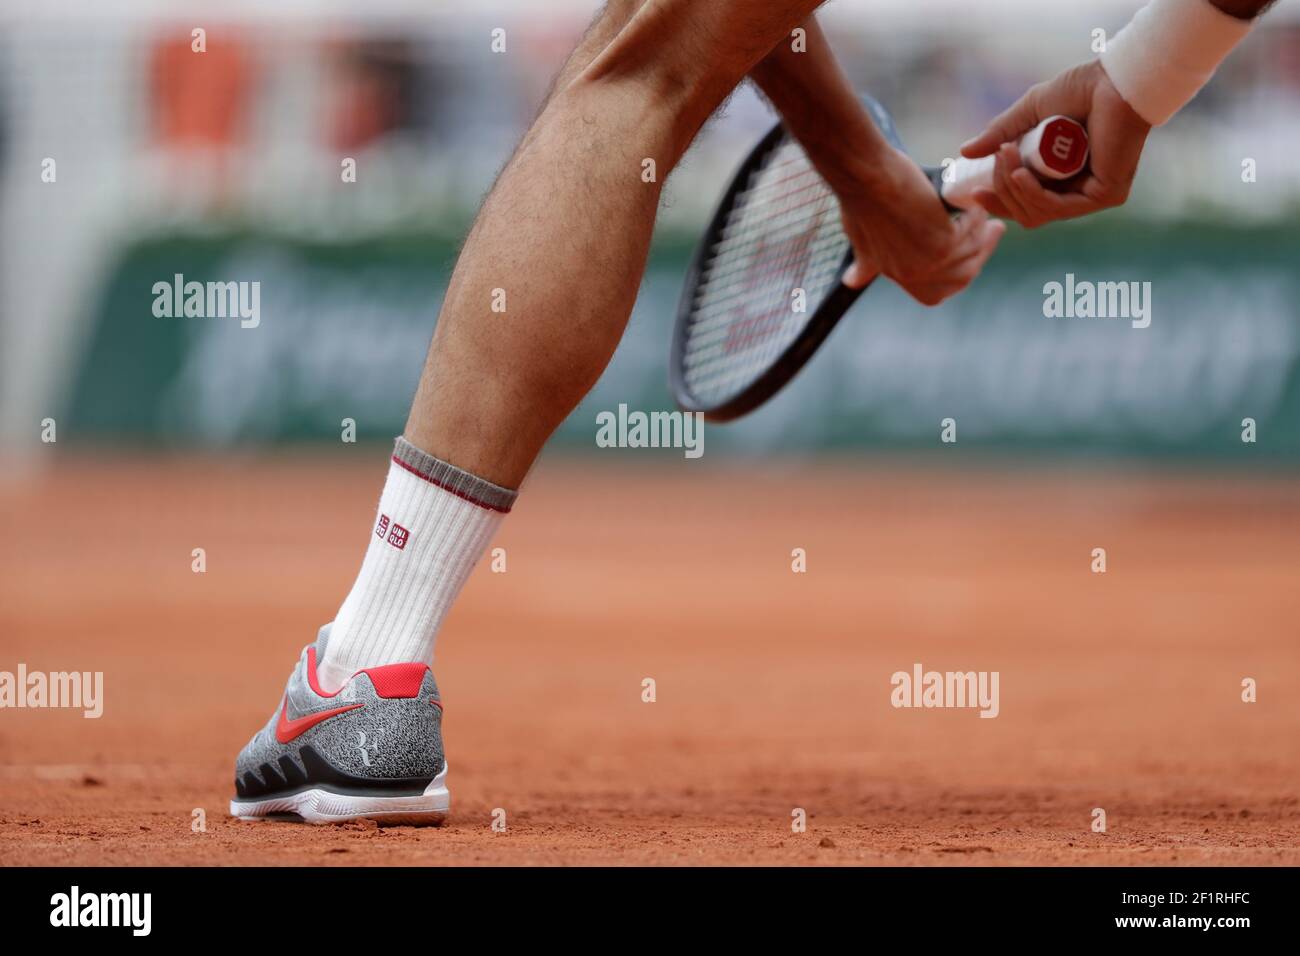 Ilustración de las zapatillas Nike Air Zoom vapor 2019 de Roger FEDERER  (sui) durante el Roland-Garros 2019, Grand Slam Tennis Tournament, sorteo  masculino el 4 de junio de 2019 en el estadio